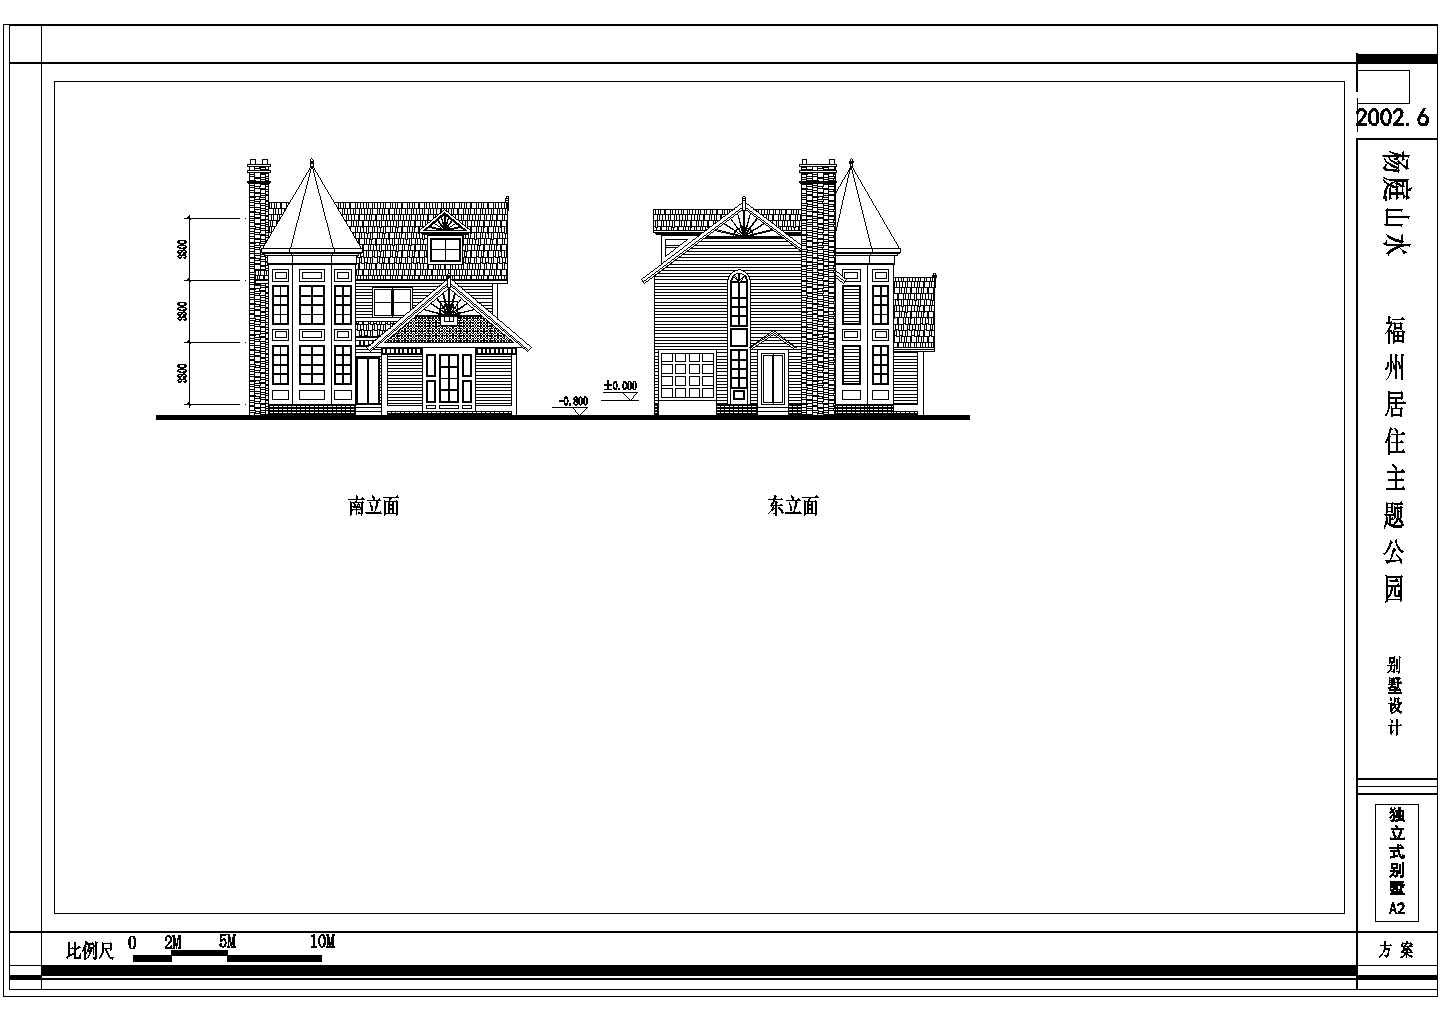 福州居住主题公园别墅建筑设计施工图